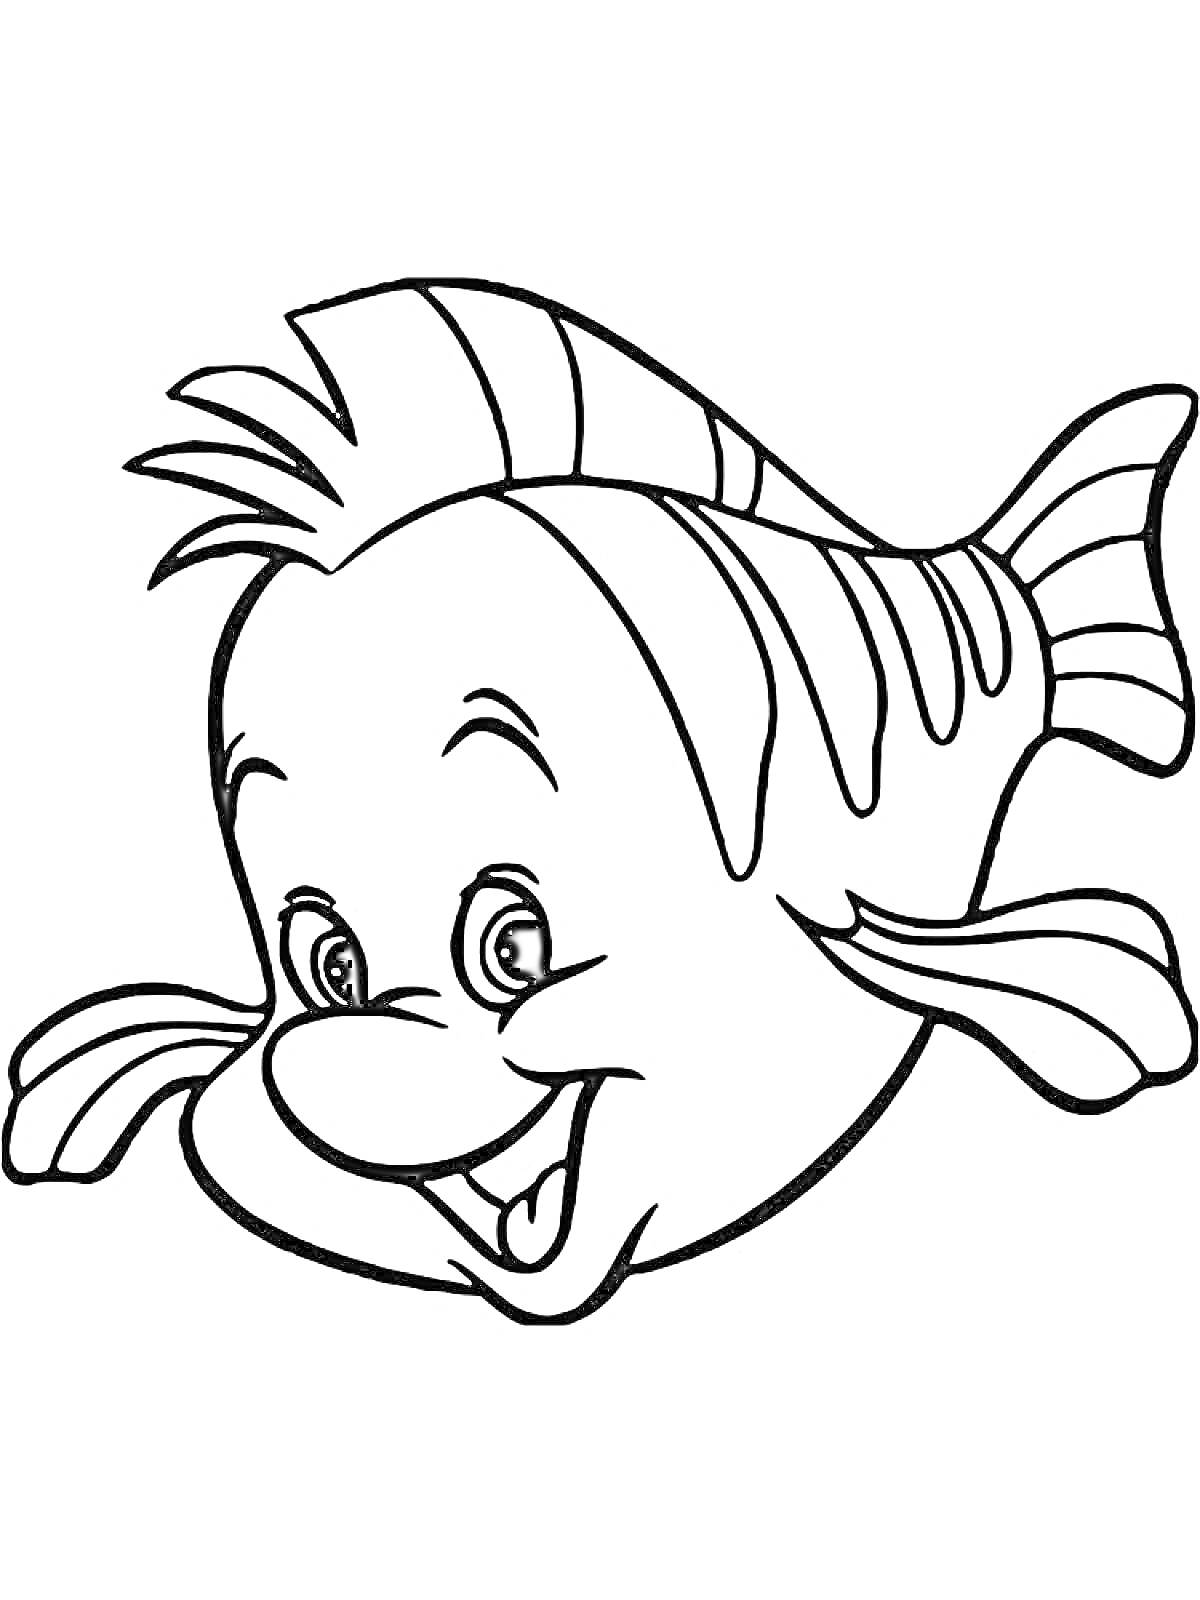 Раскраска Улыбающаяся рыбка с полосками и плавниками